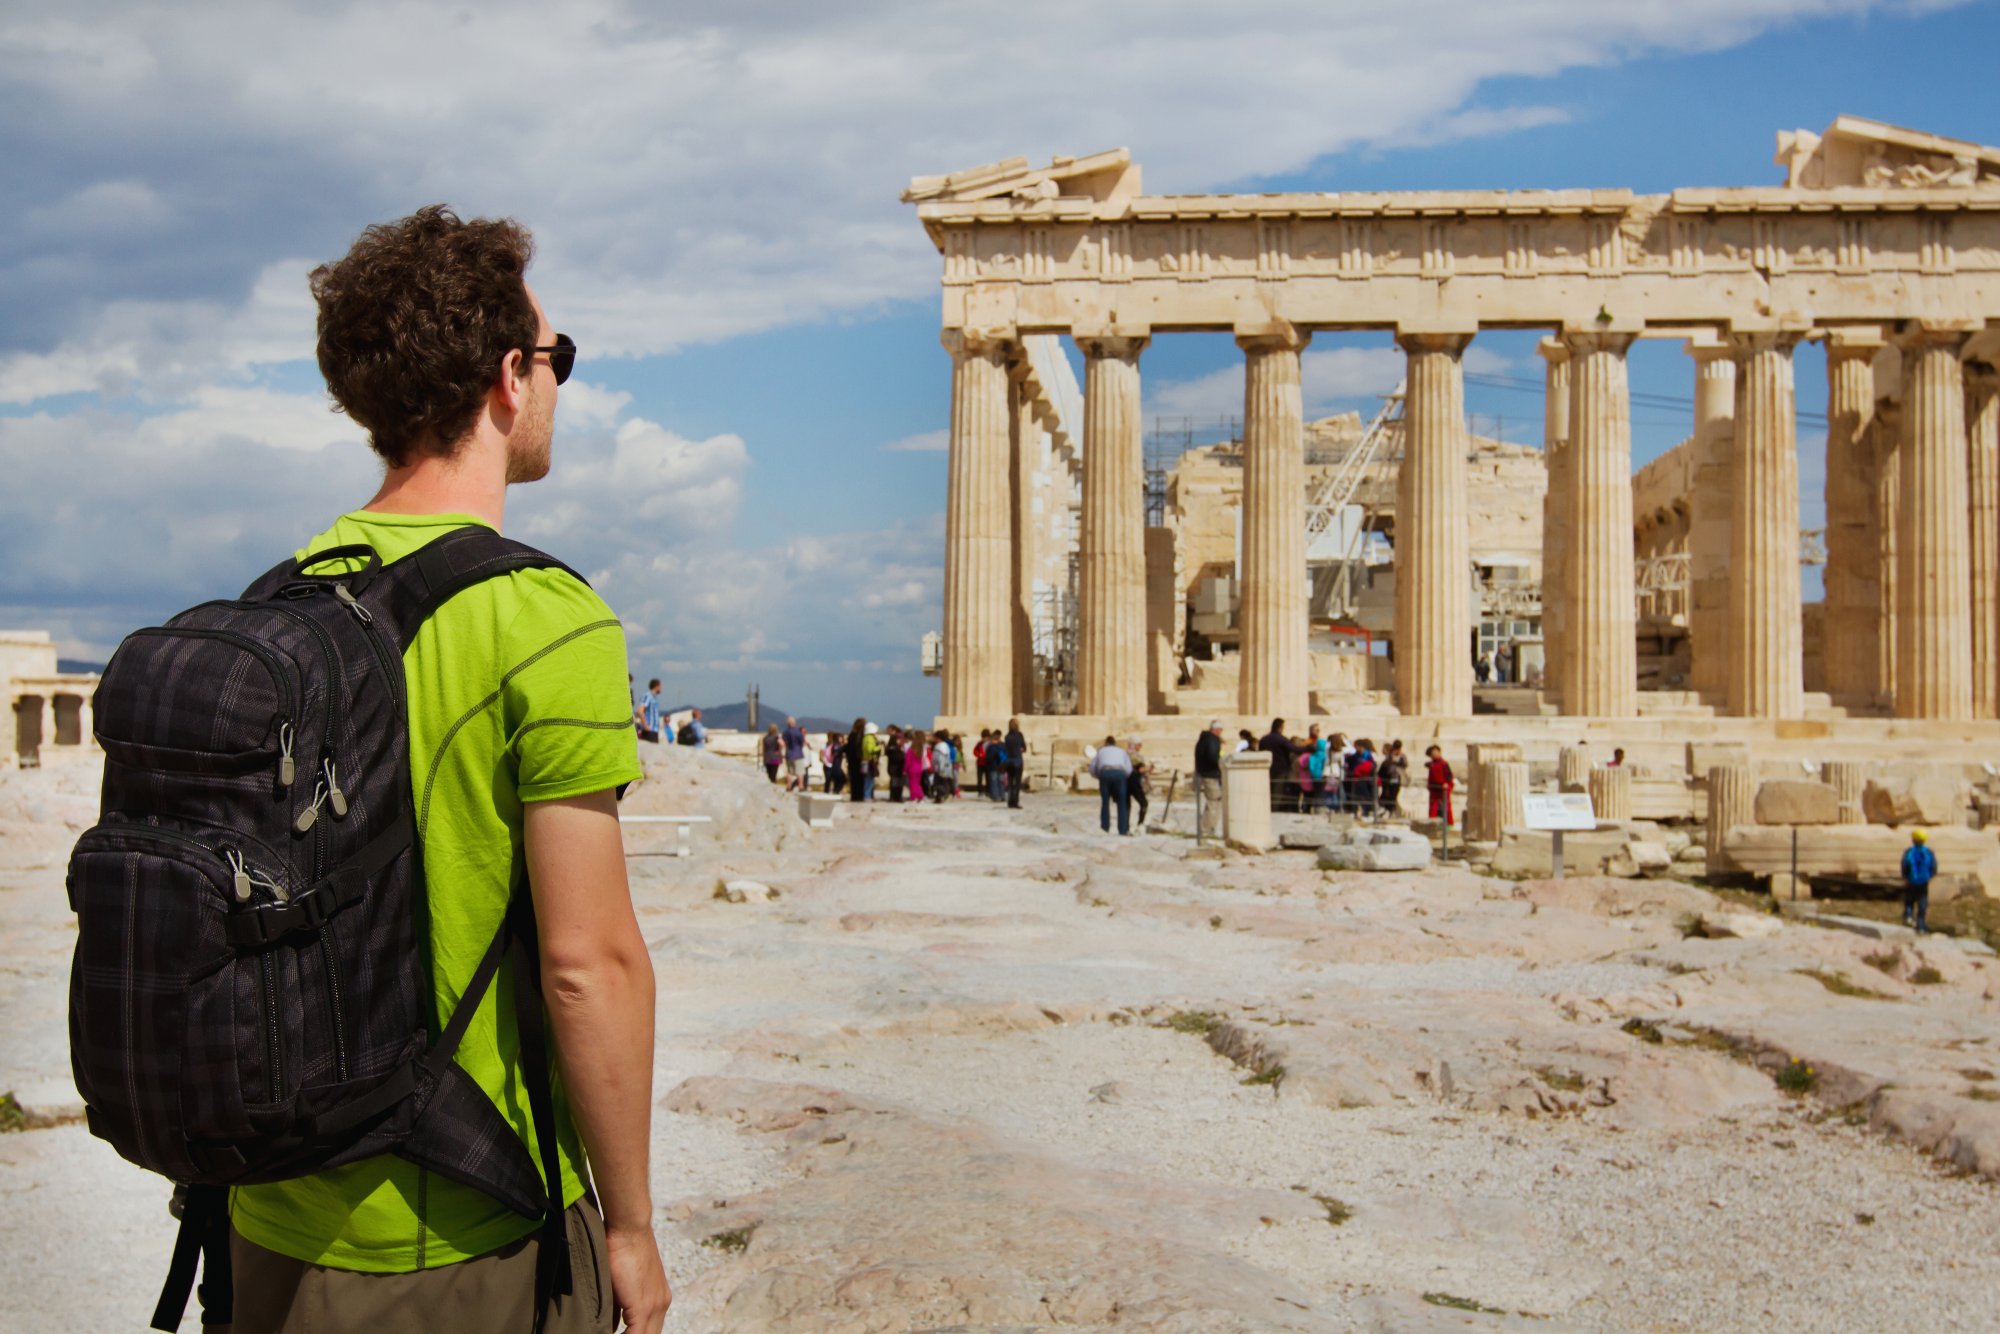 Στον «αέρα» 7.500 τουρίστες στην Ελλάδα μετά το «κανόνι» της FTI – Χρωστάει 300 εκατ. ευρώ από πέρσι